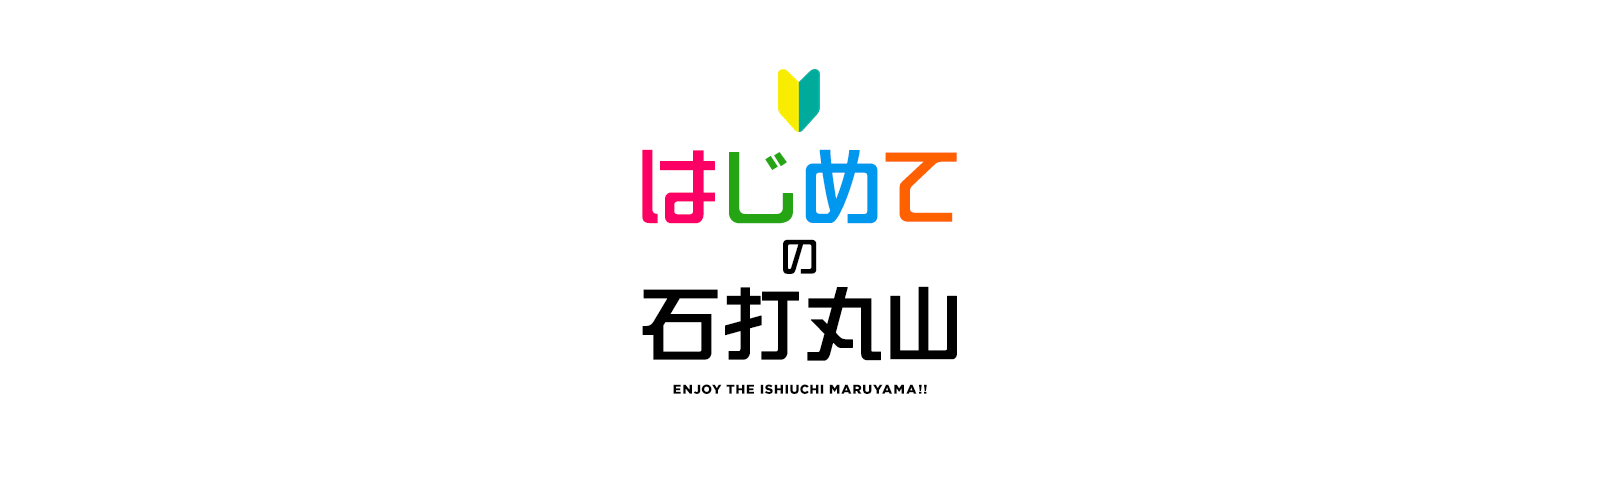 はじめての石打丸山 ENJOY THE ISHIUCHI MARUYAMA!!